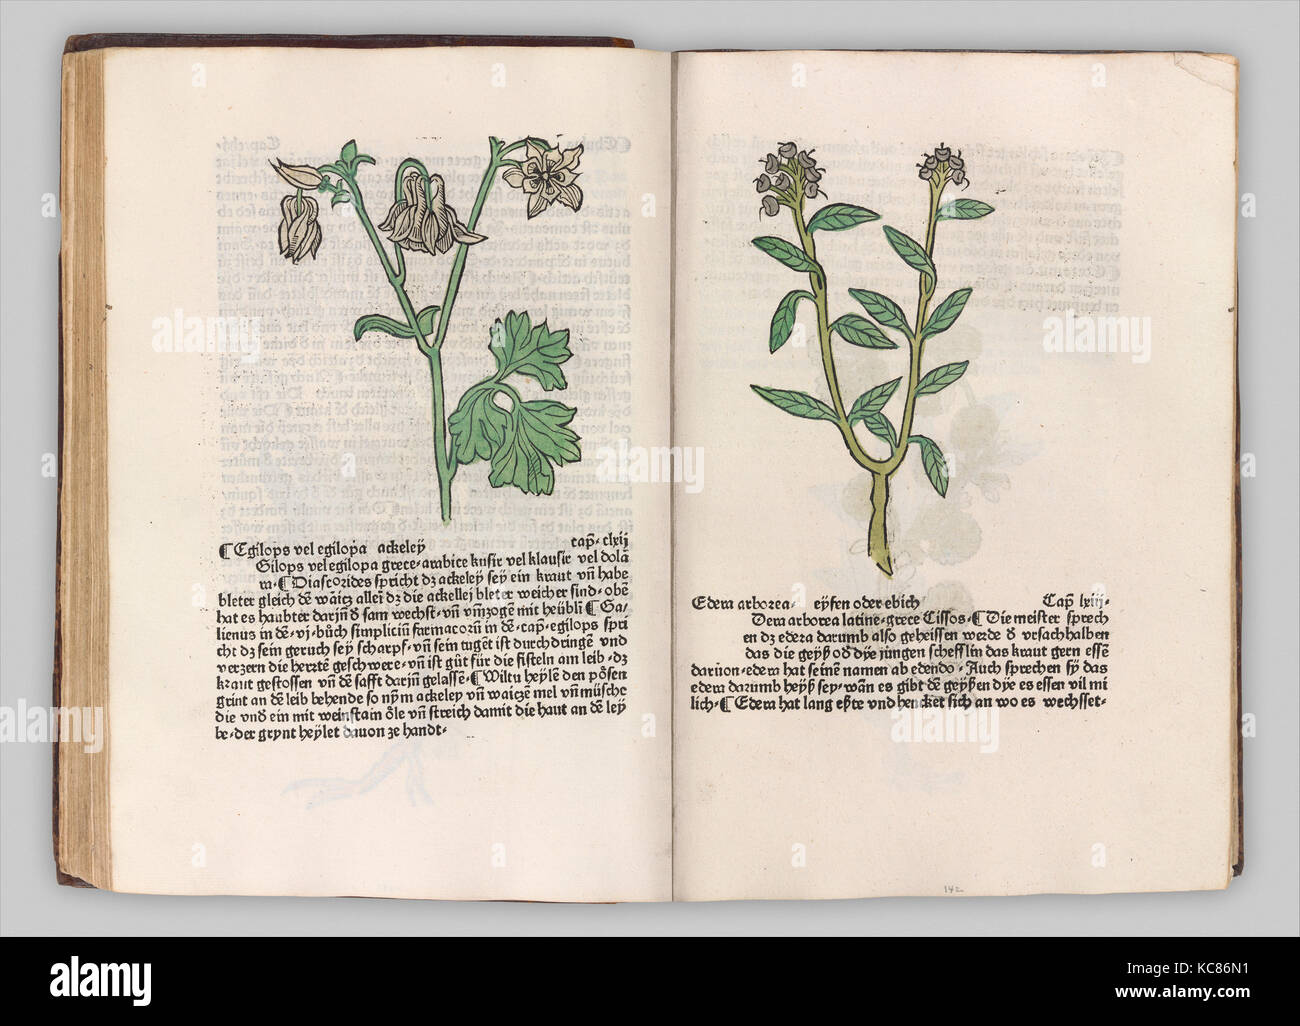 Herbarius - Gart der gesuntheit - Hortus sanitatis, 1485 Stock Photo